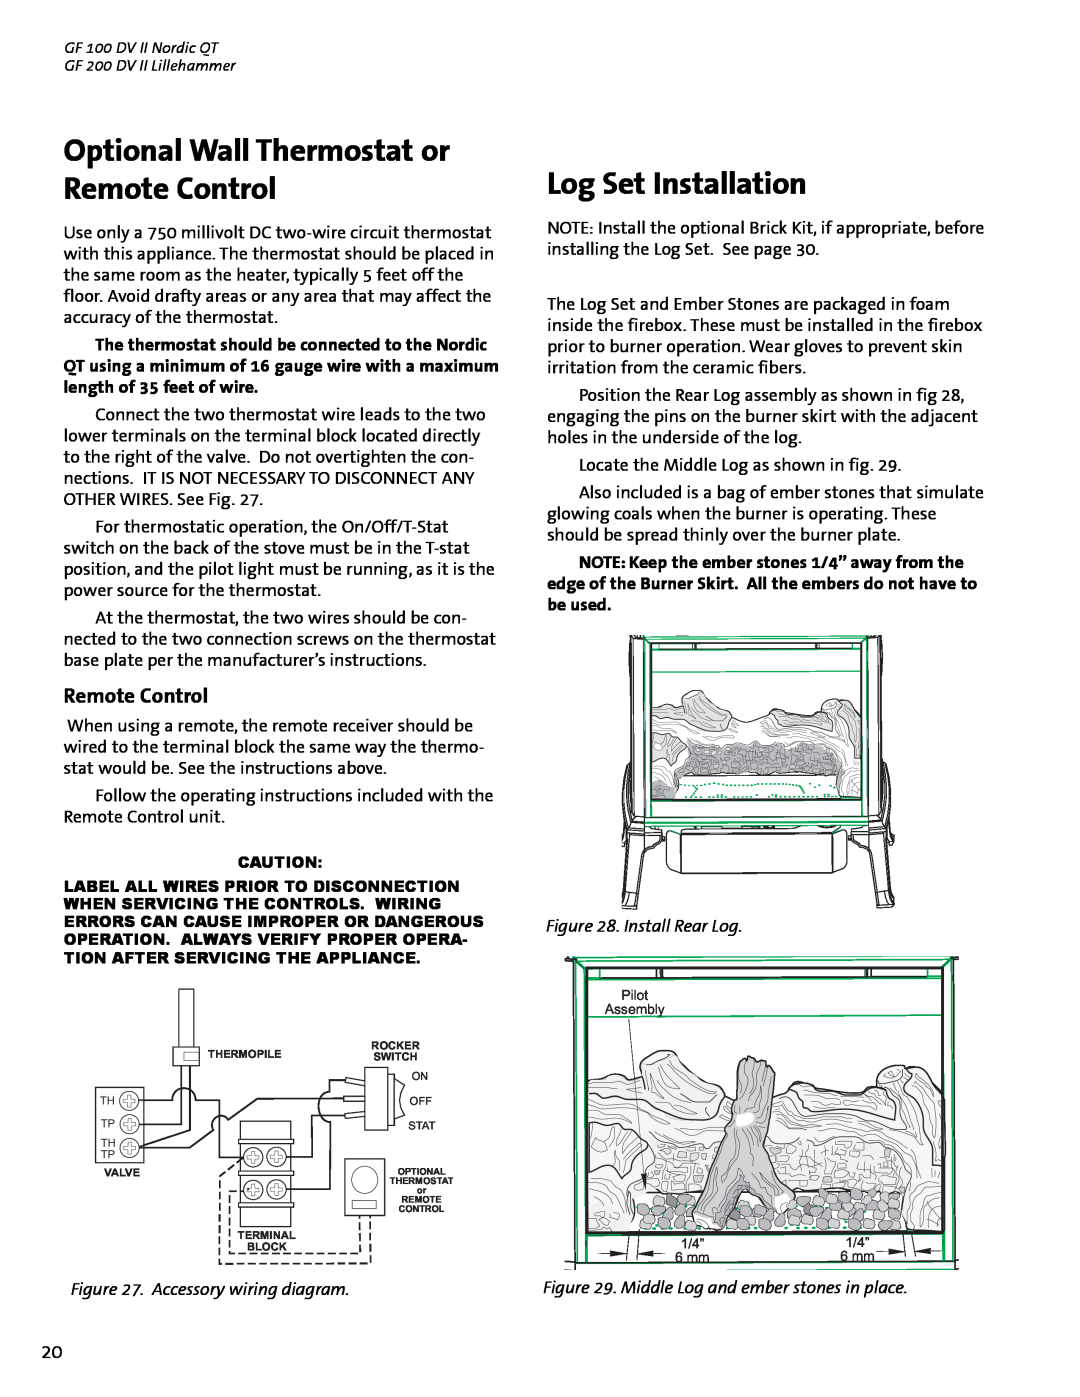 Jotul GF 100 DV II, GF 200 DV II manual Optional Wall Thermostat or Remote Control, Log Set Installation, Install Rear Log 